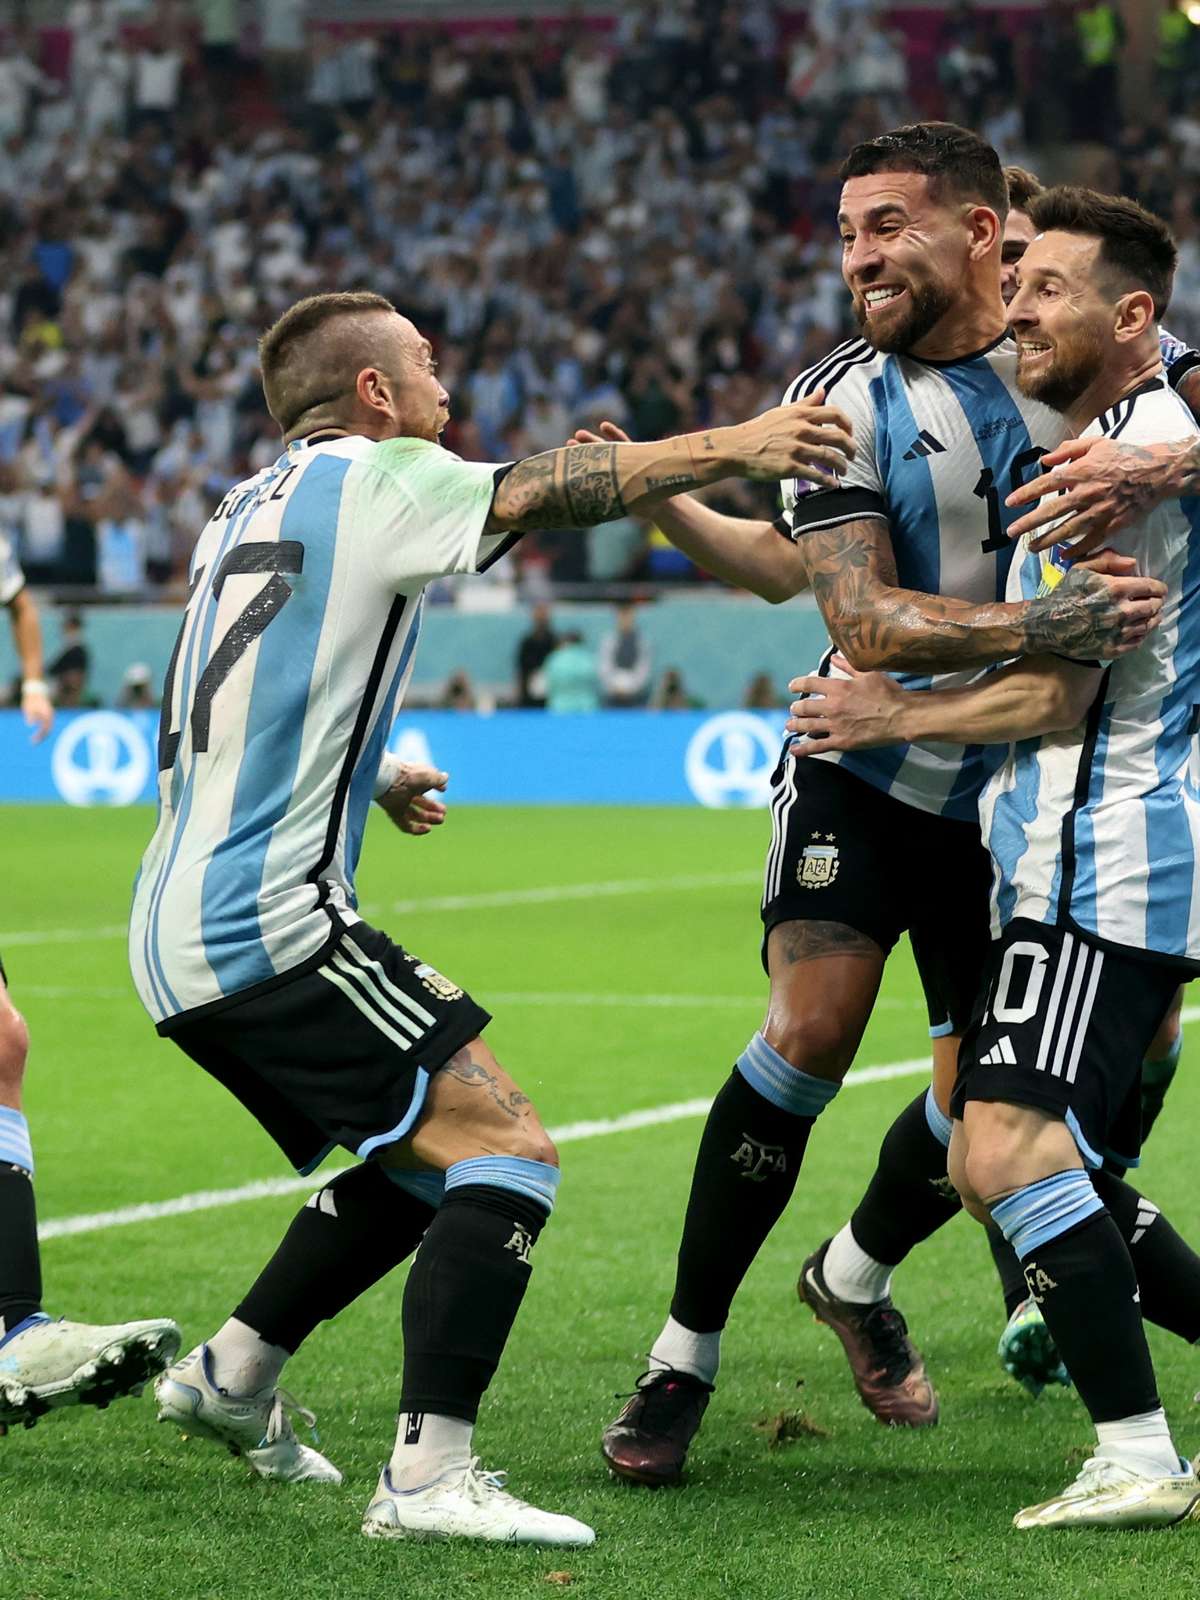 Messi brilha no milésimo jogo, Argentina vence Austrália e avança na Copa -  Futebol - R7 Copa do Mundo